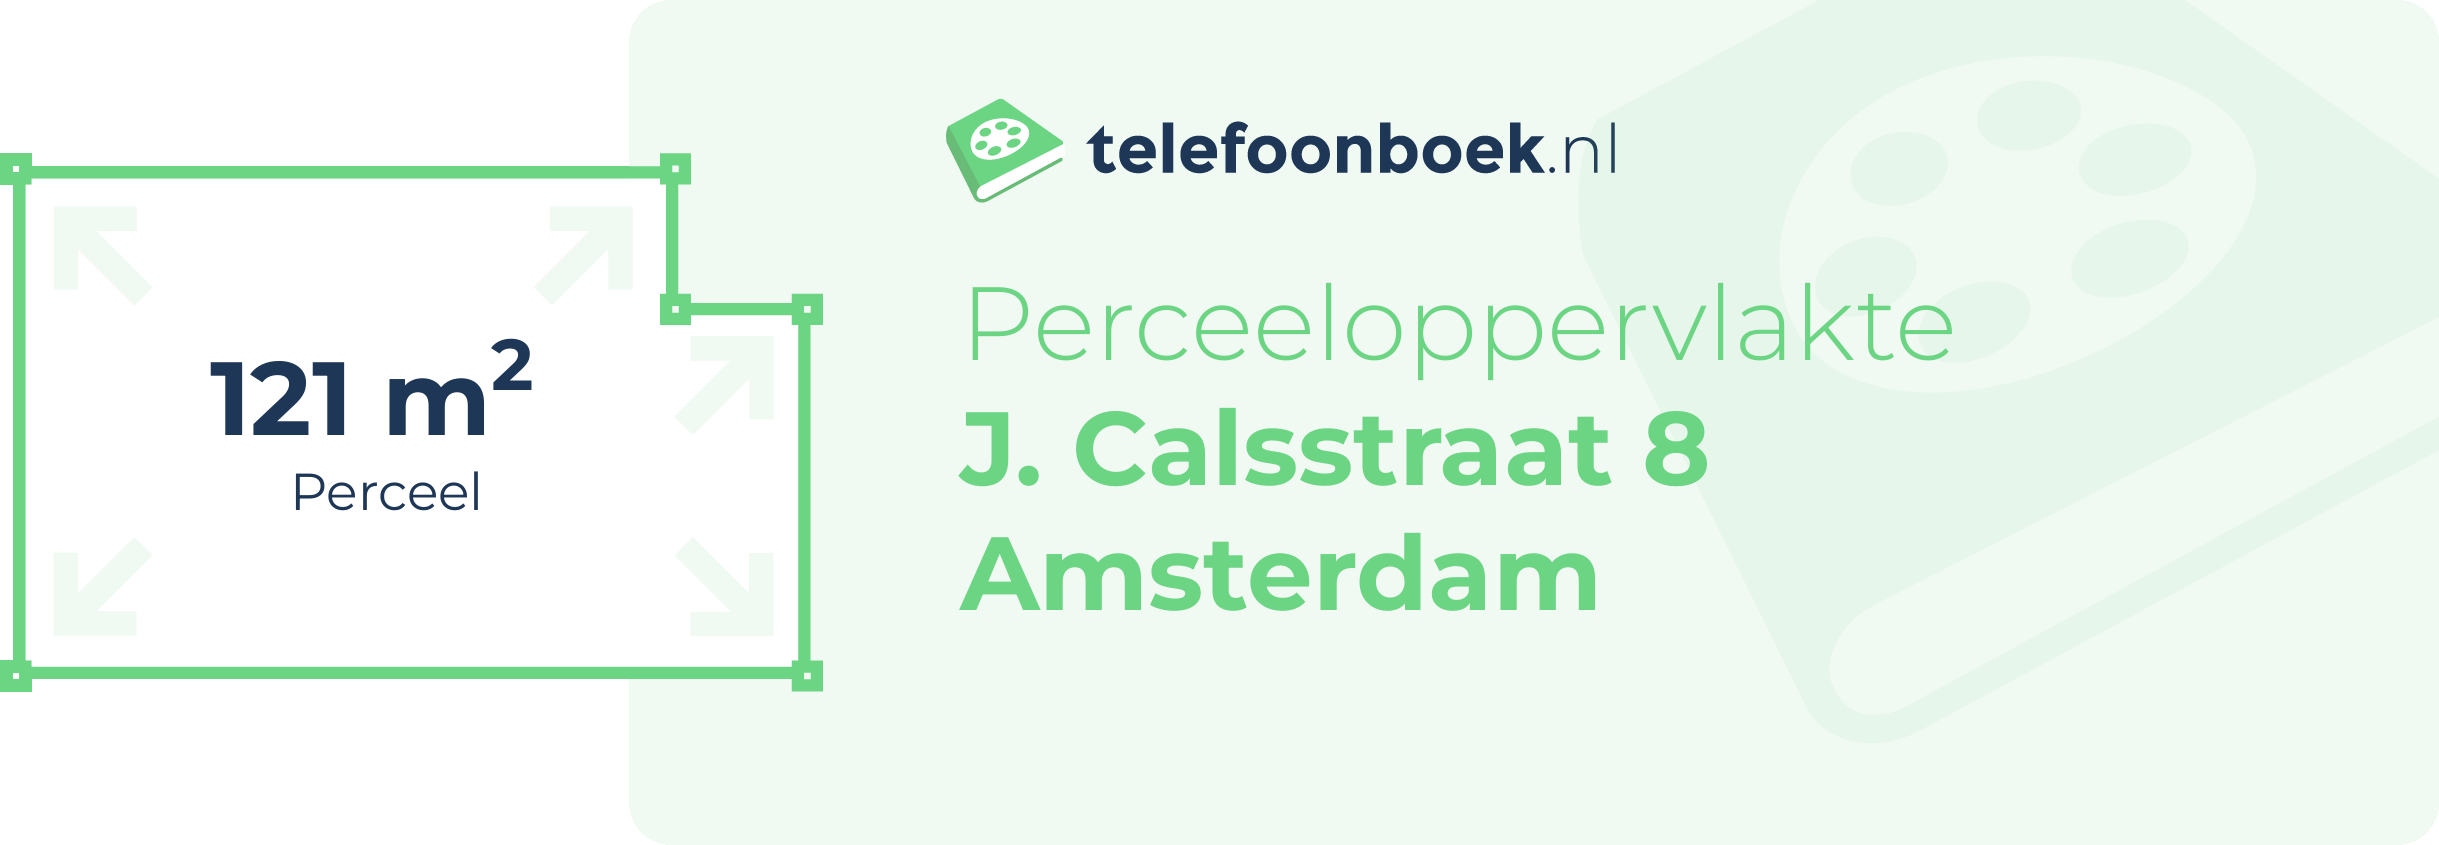 Perceeloppervlakte J. Calsstraat 8 Amsterdam